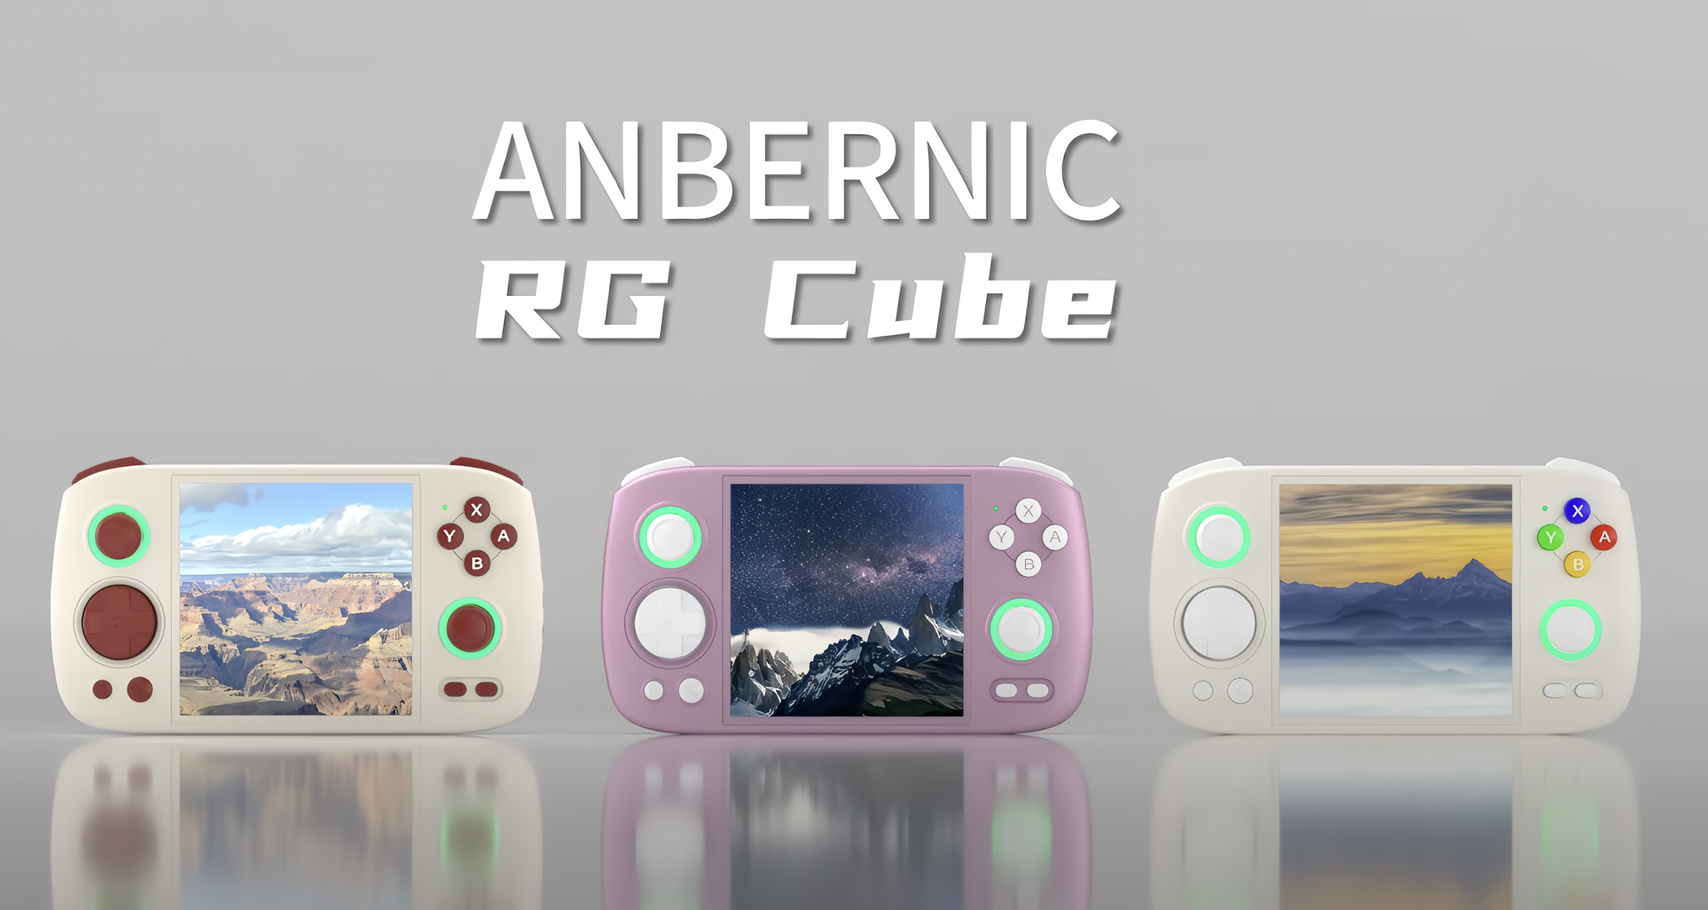 Konsola do gier Anbernic RG Cube dla entuzjastów gier retro została zaprezentowana